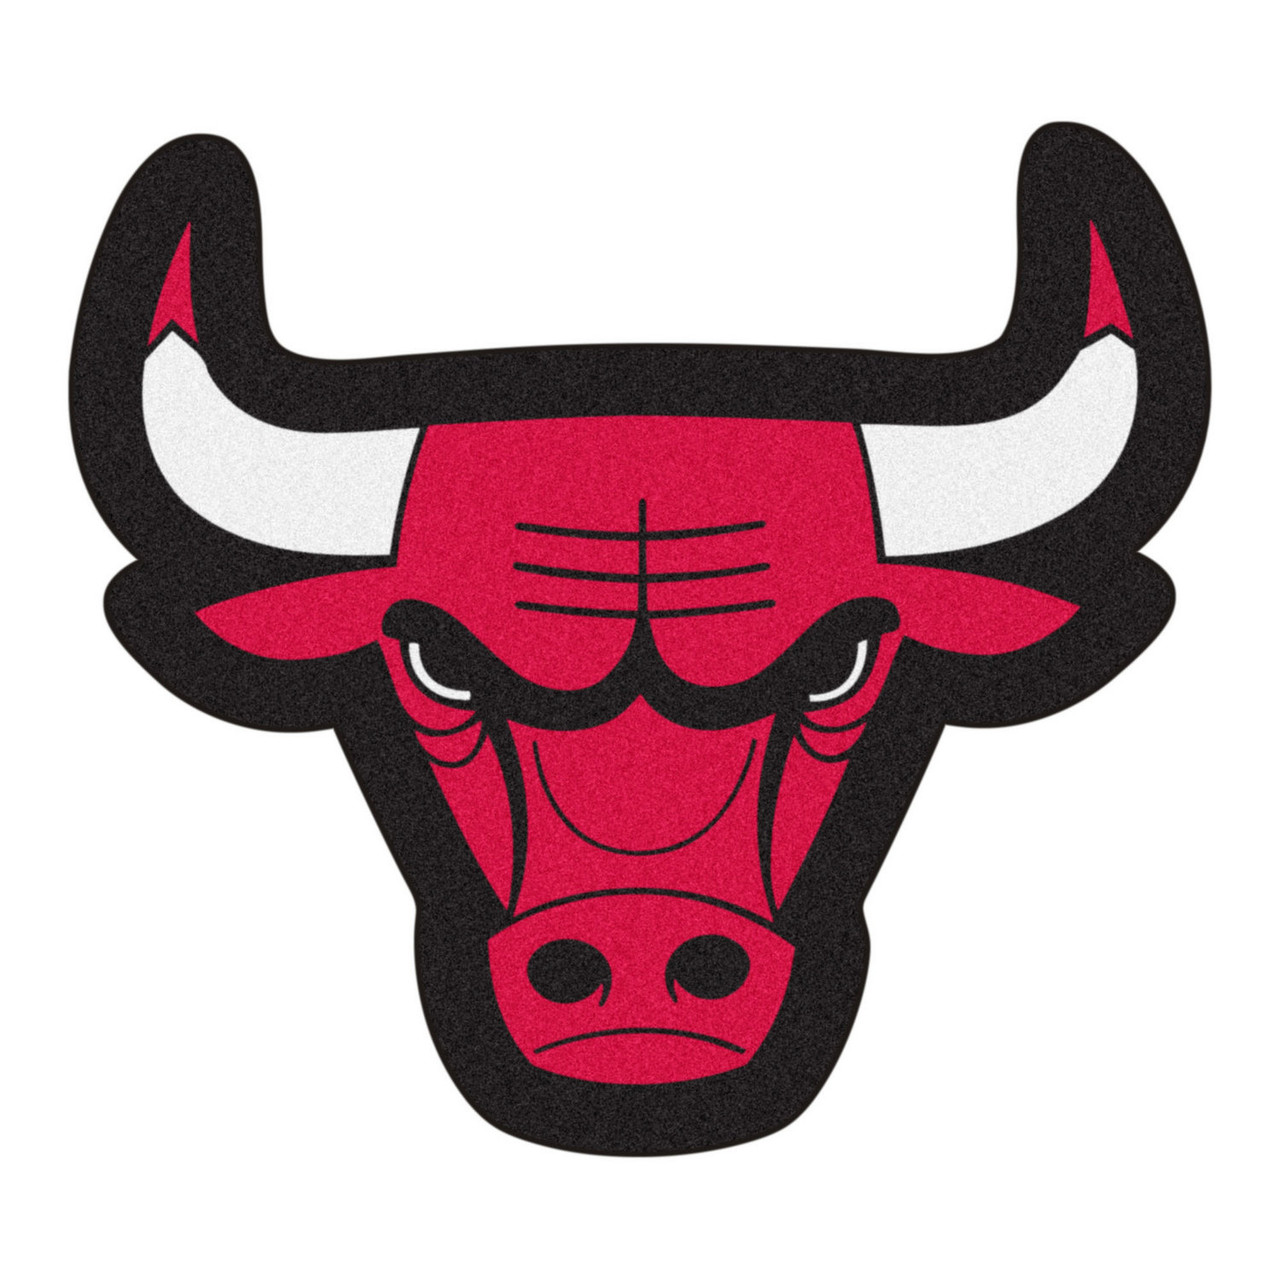 reunirse munición en progreso Chicago Bulls Logo Red Mascot Mat - Floor Rug - Area Rug - NBA